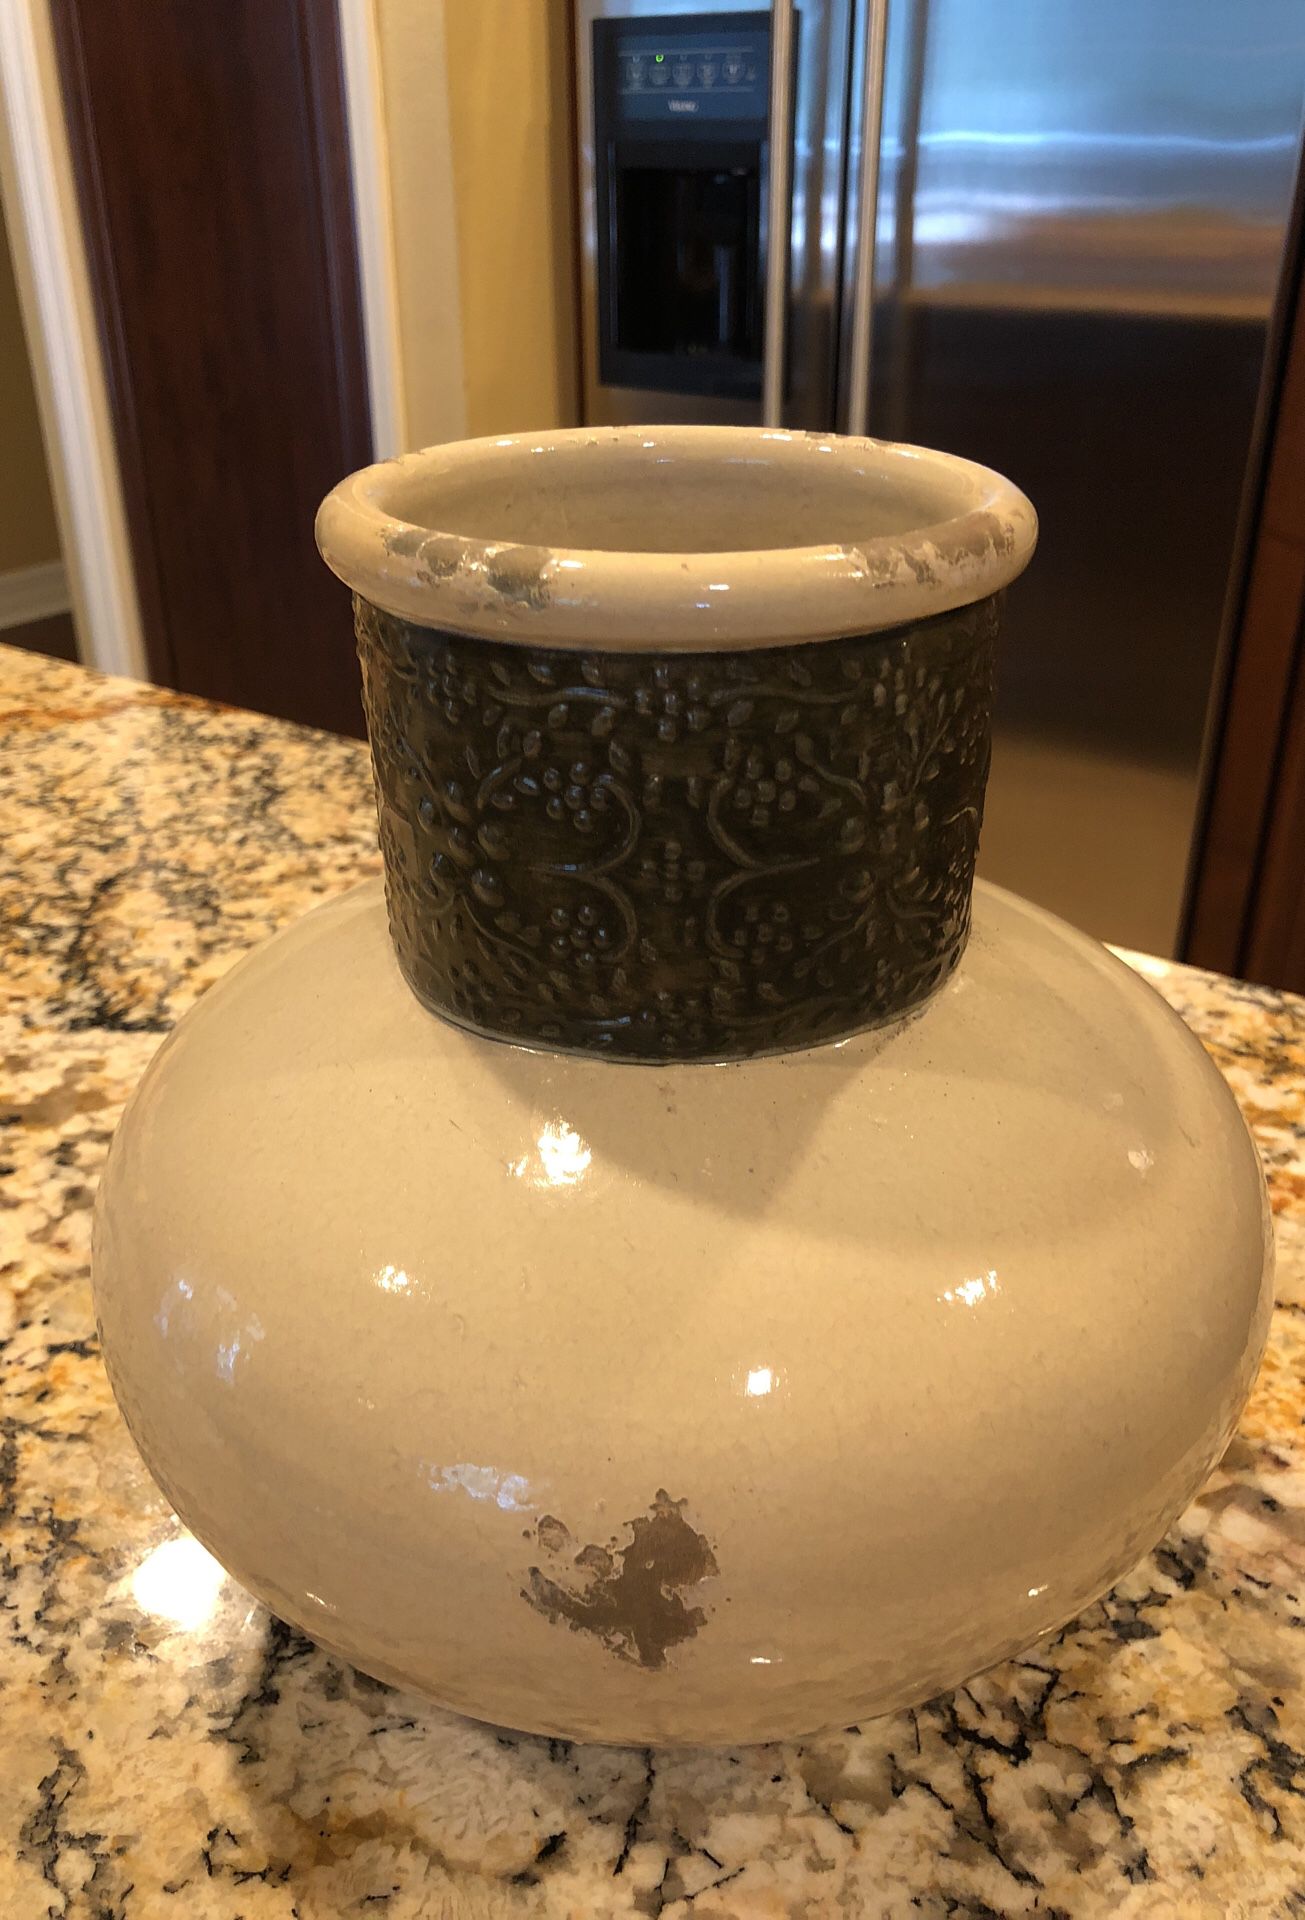 Pottery Barn pottery vase